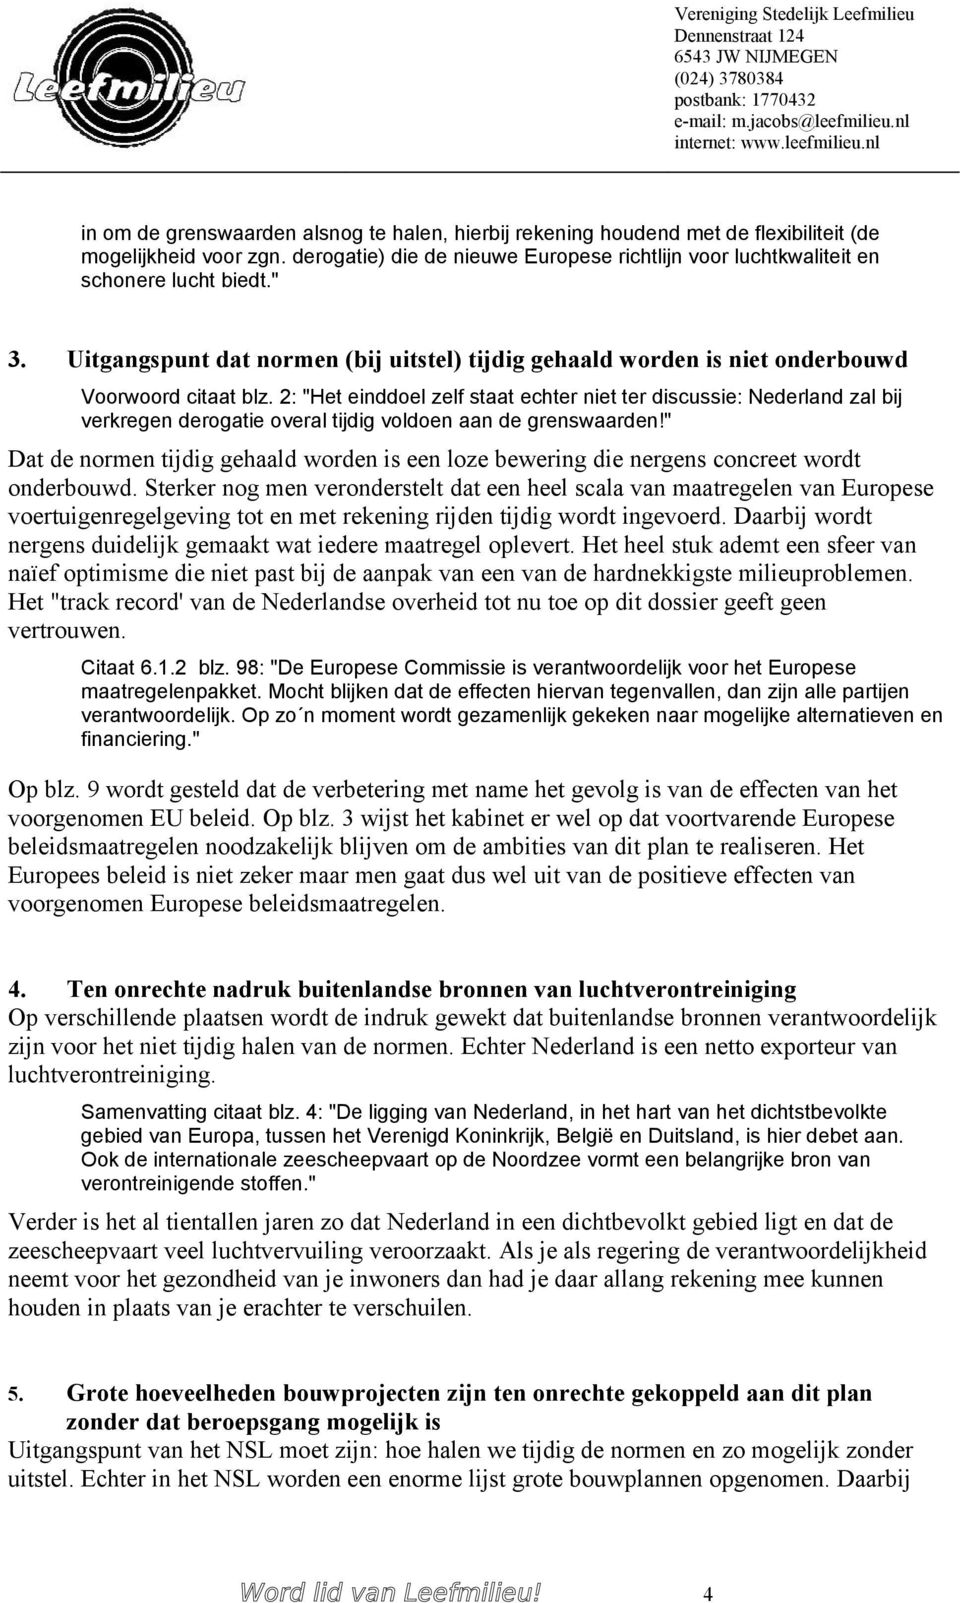 2: "Het einddoel zelf staat echter niet ter discussie: Nederland zal bij verkregen derogatie overal tijdig voldoen aan de grenswaarden!